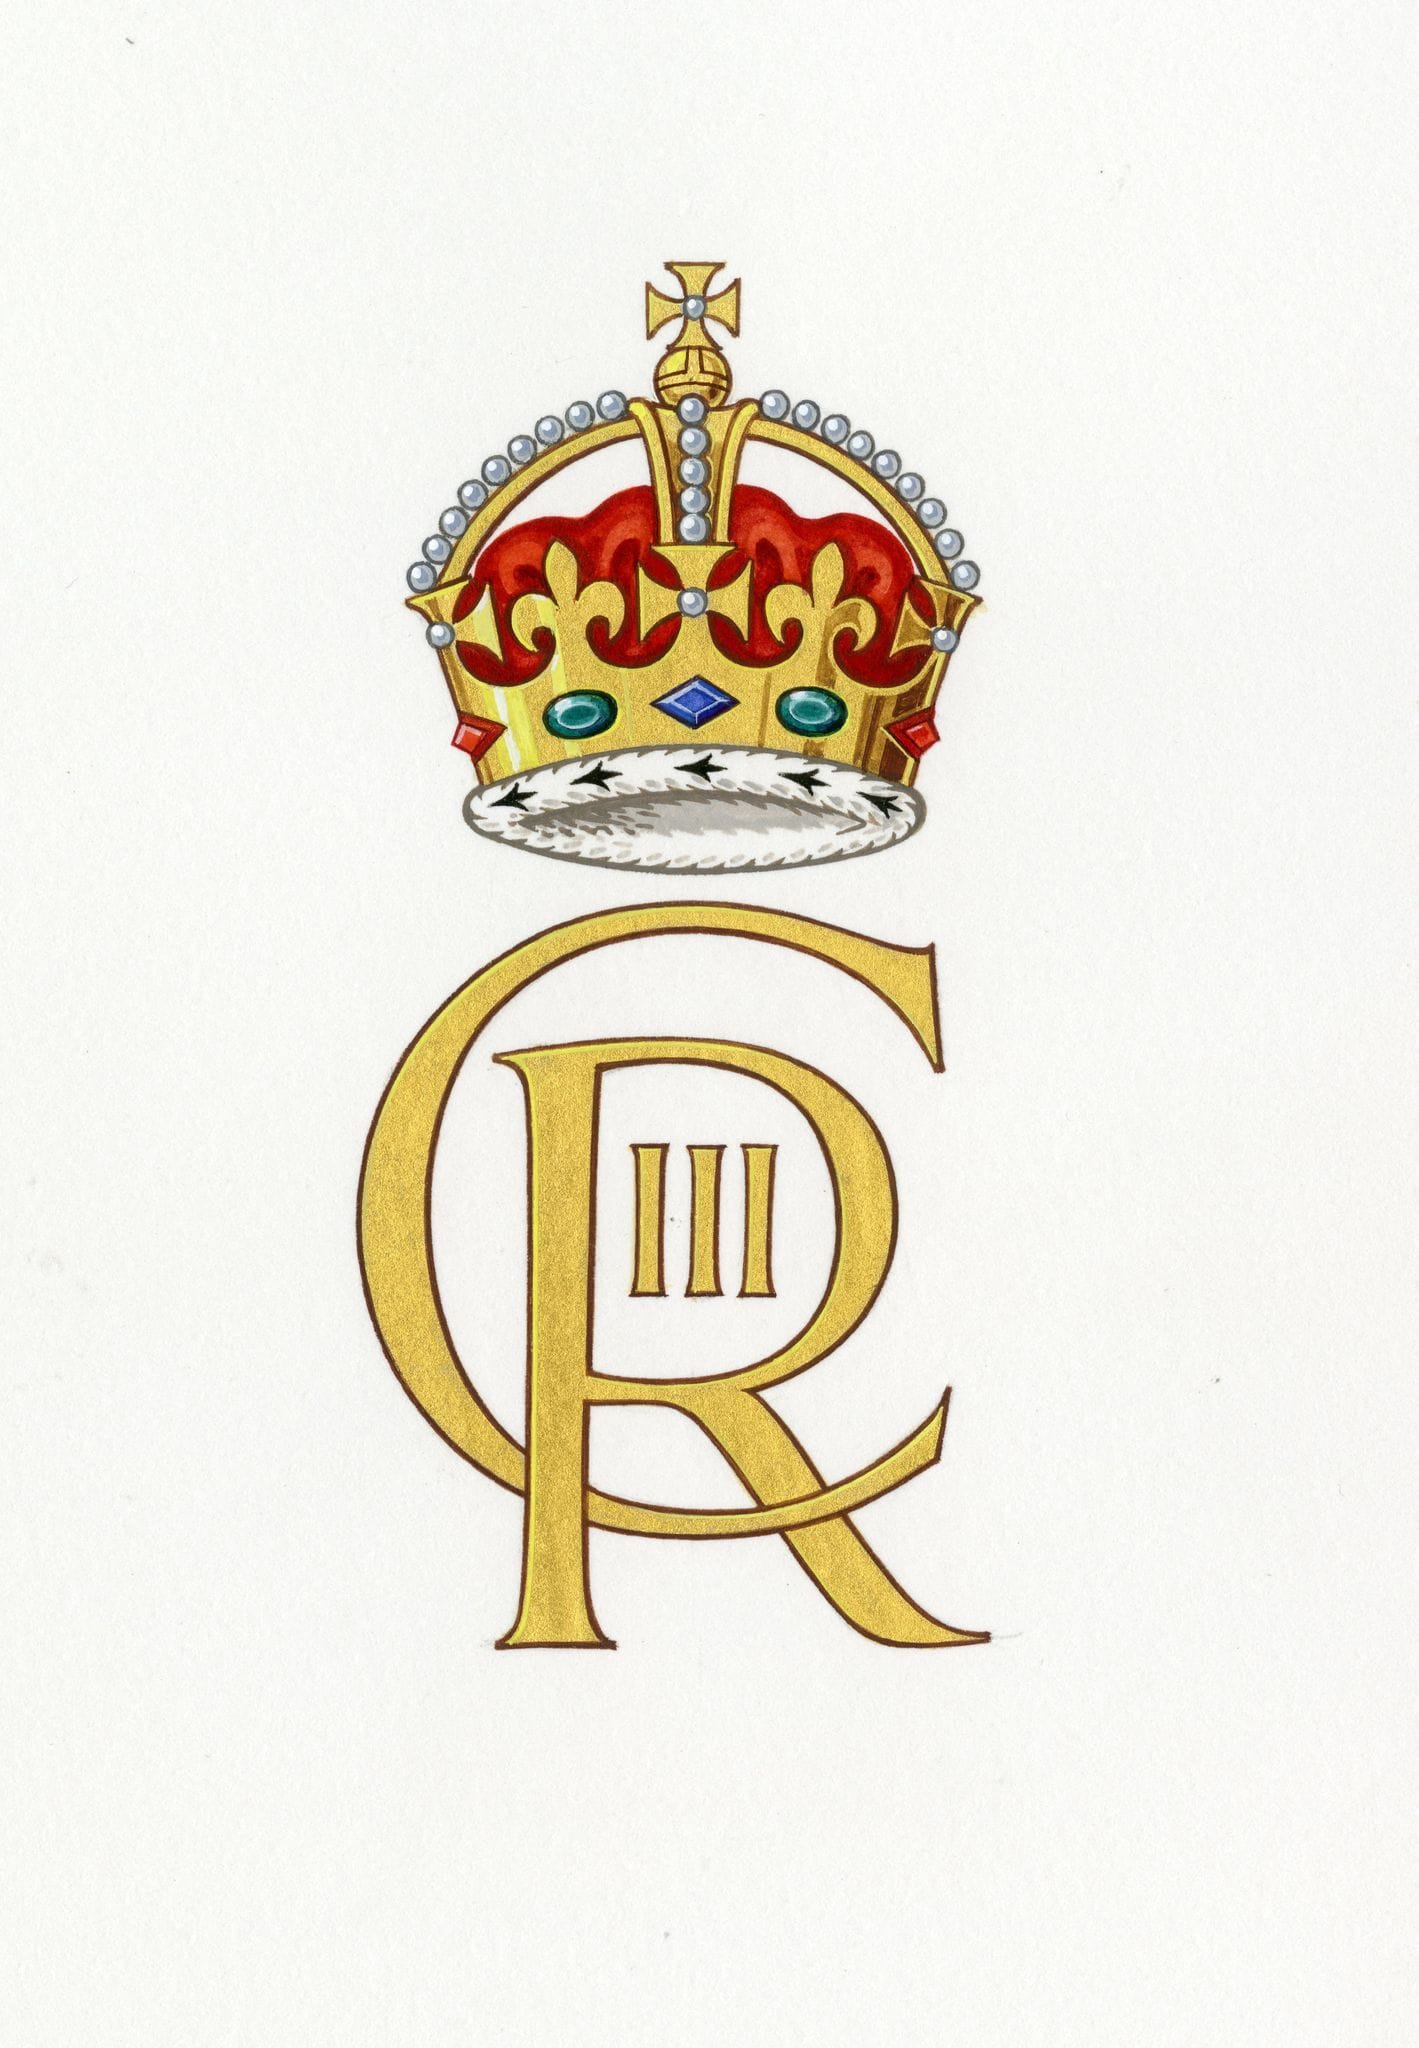 So sieht das offizielle Monogramm von König Charles III. aus.